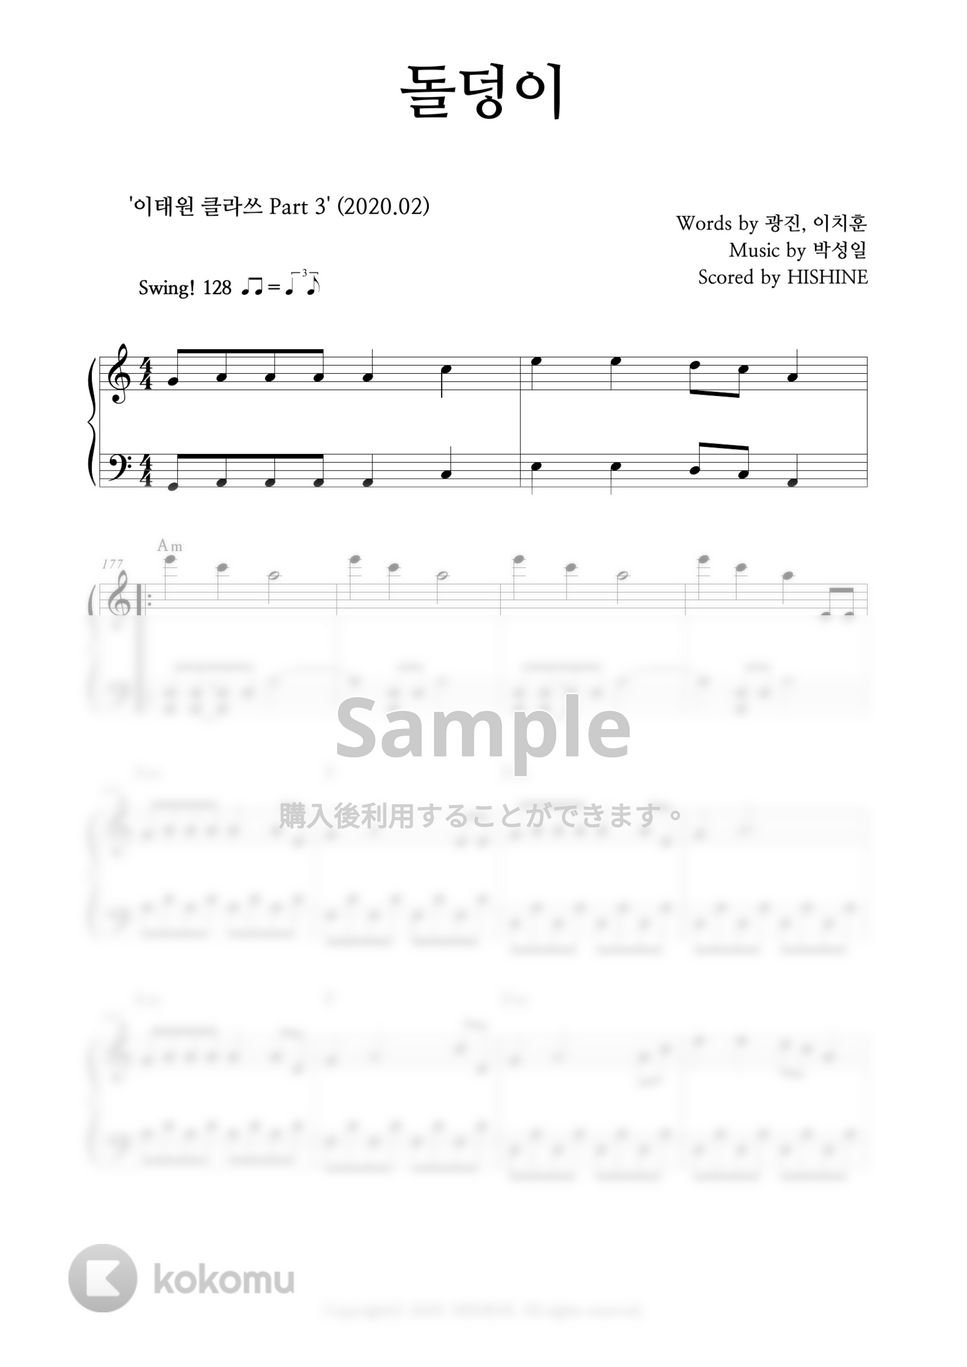 ハ・ヒョヌ - 石ころ(梨泰院クラス OST) (Easy Key.) by HISHINE